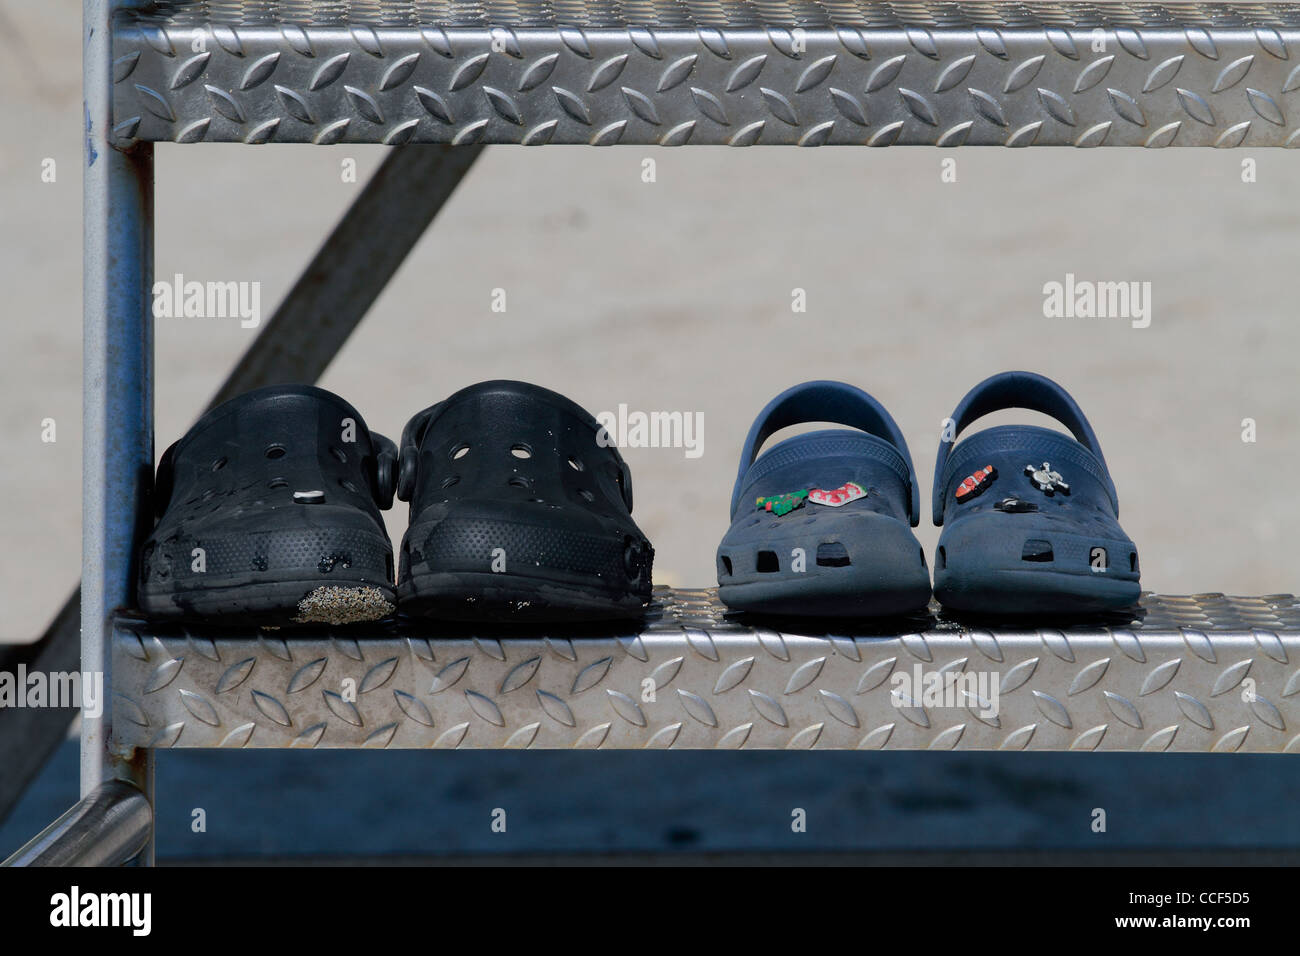 Half Moon Bay - California zwei Paar Schuhe (Crocs?) auf ein Leben bewachen Turm am Strand von Half Moon bay Stockfoto